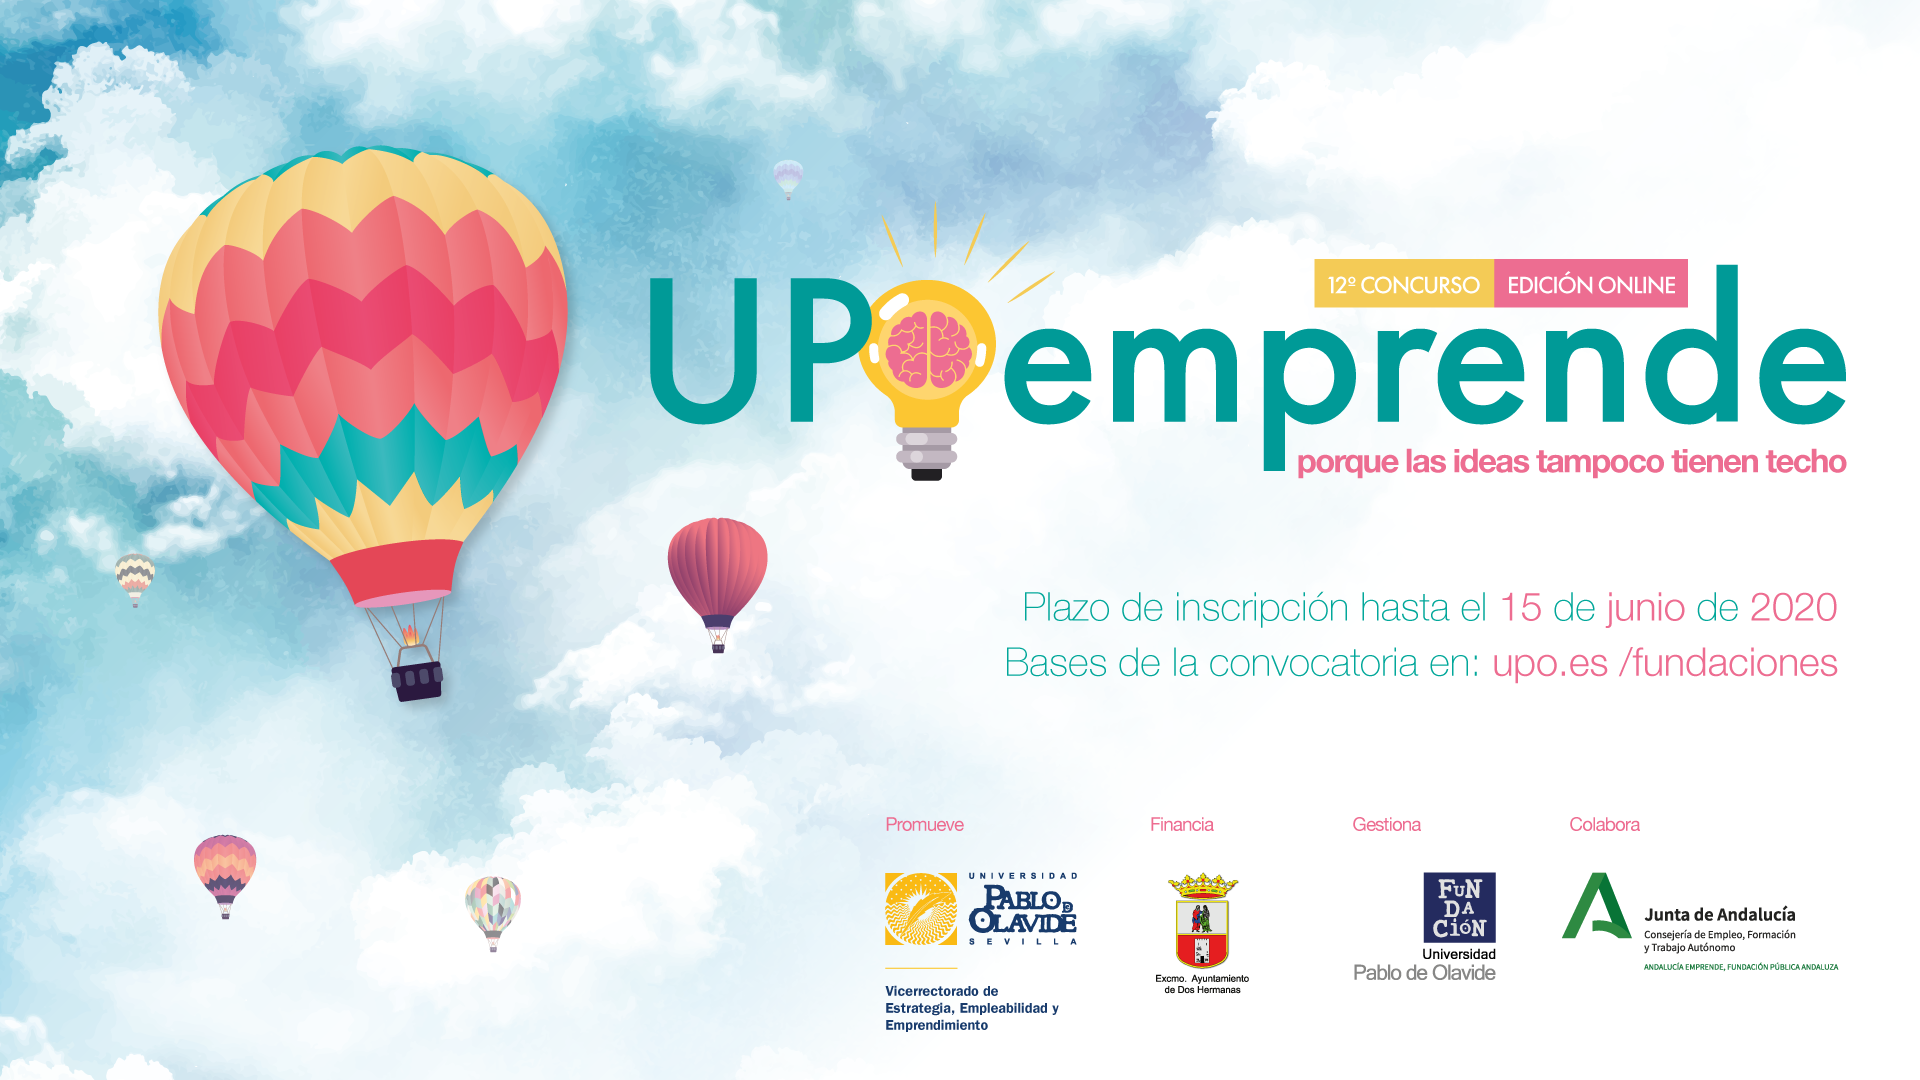 Nueva convocatoria de UPOEMPRENDE, el concurso de La Universidad Pablo de Olavide dirigido a universitarios con espíritu emprendedor